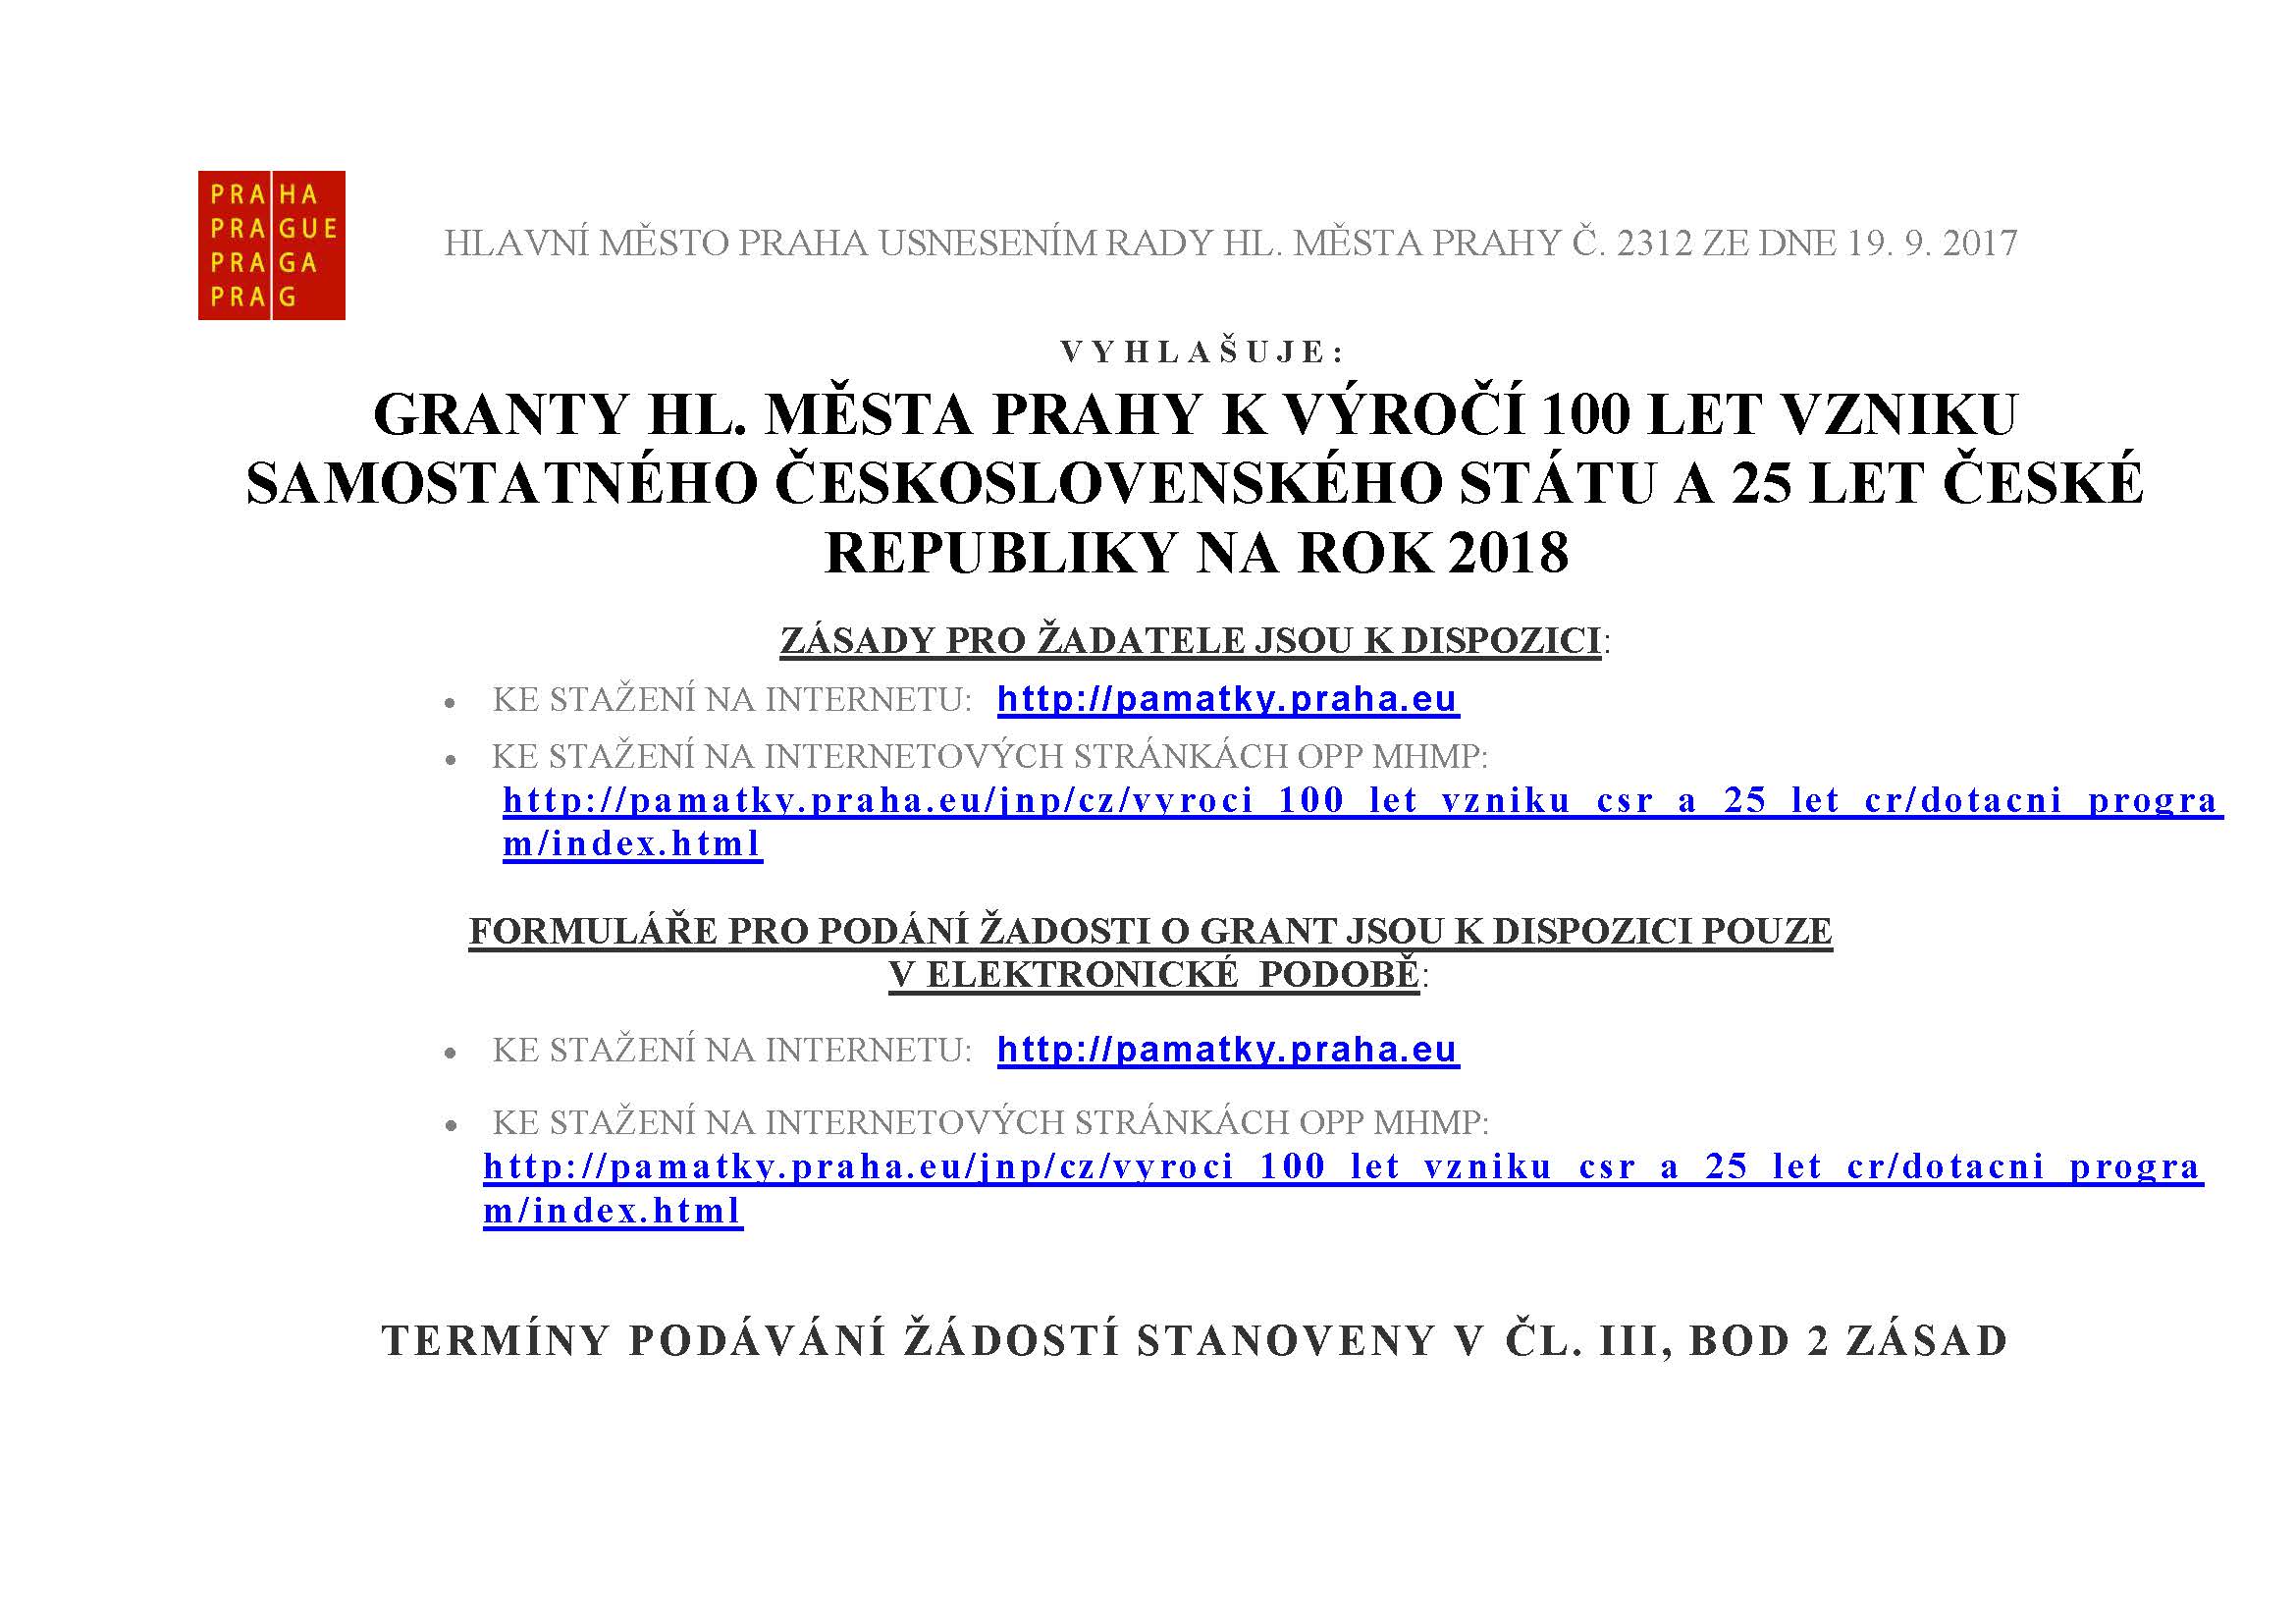 Praha vyhlásila grantový program ke 100. výročí vzniku republiky a k 25 letům ČR na rok 2018